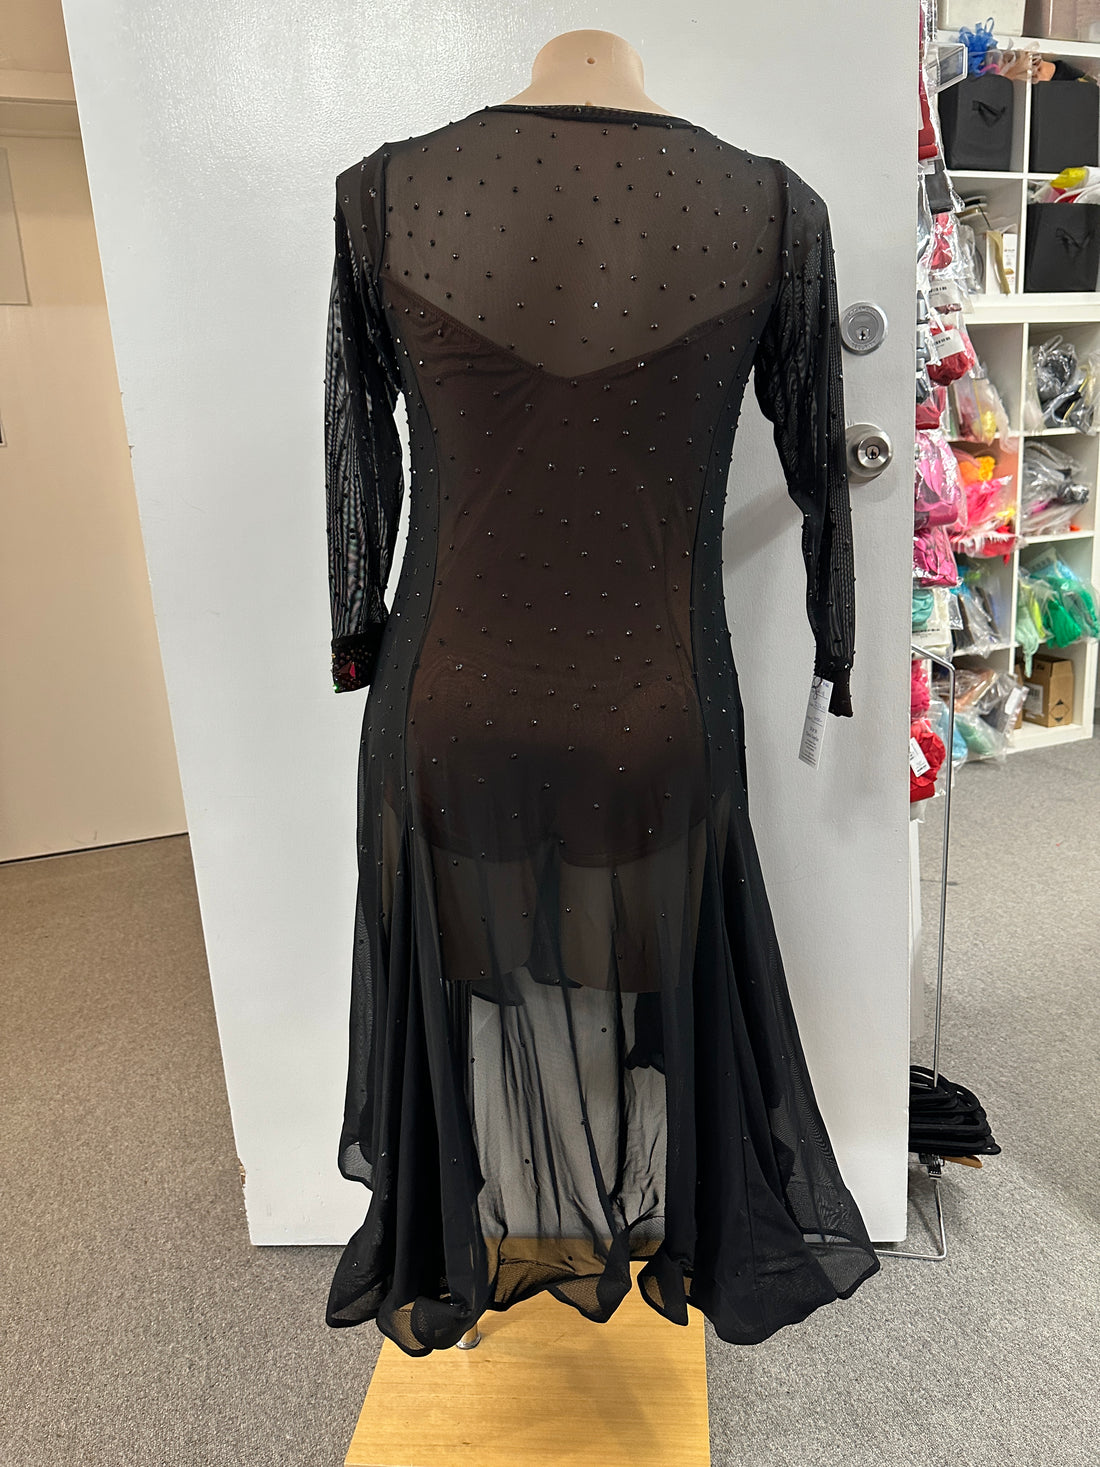 Pre Loved Black & Volcano Latin Dress (Size 14-18)